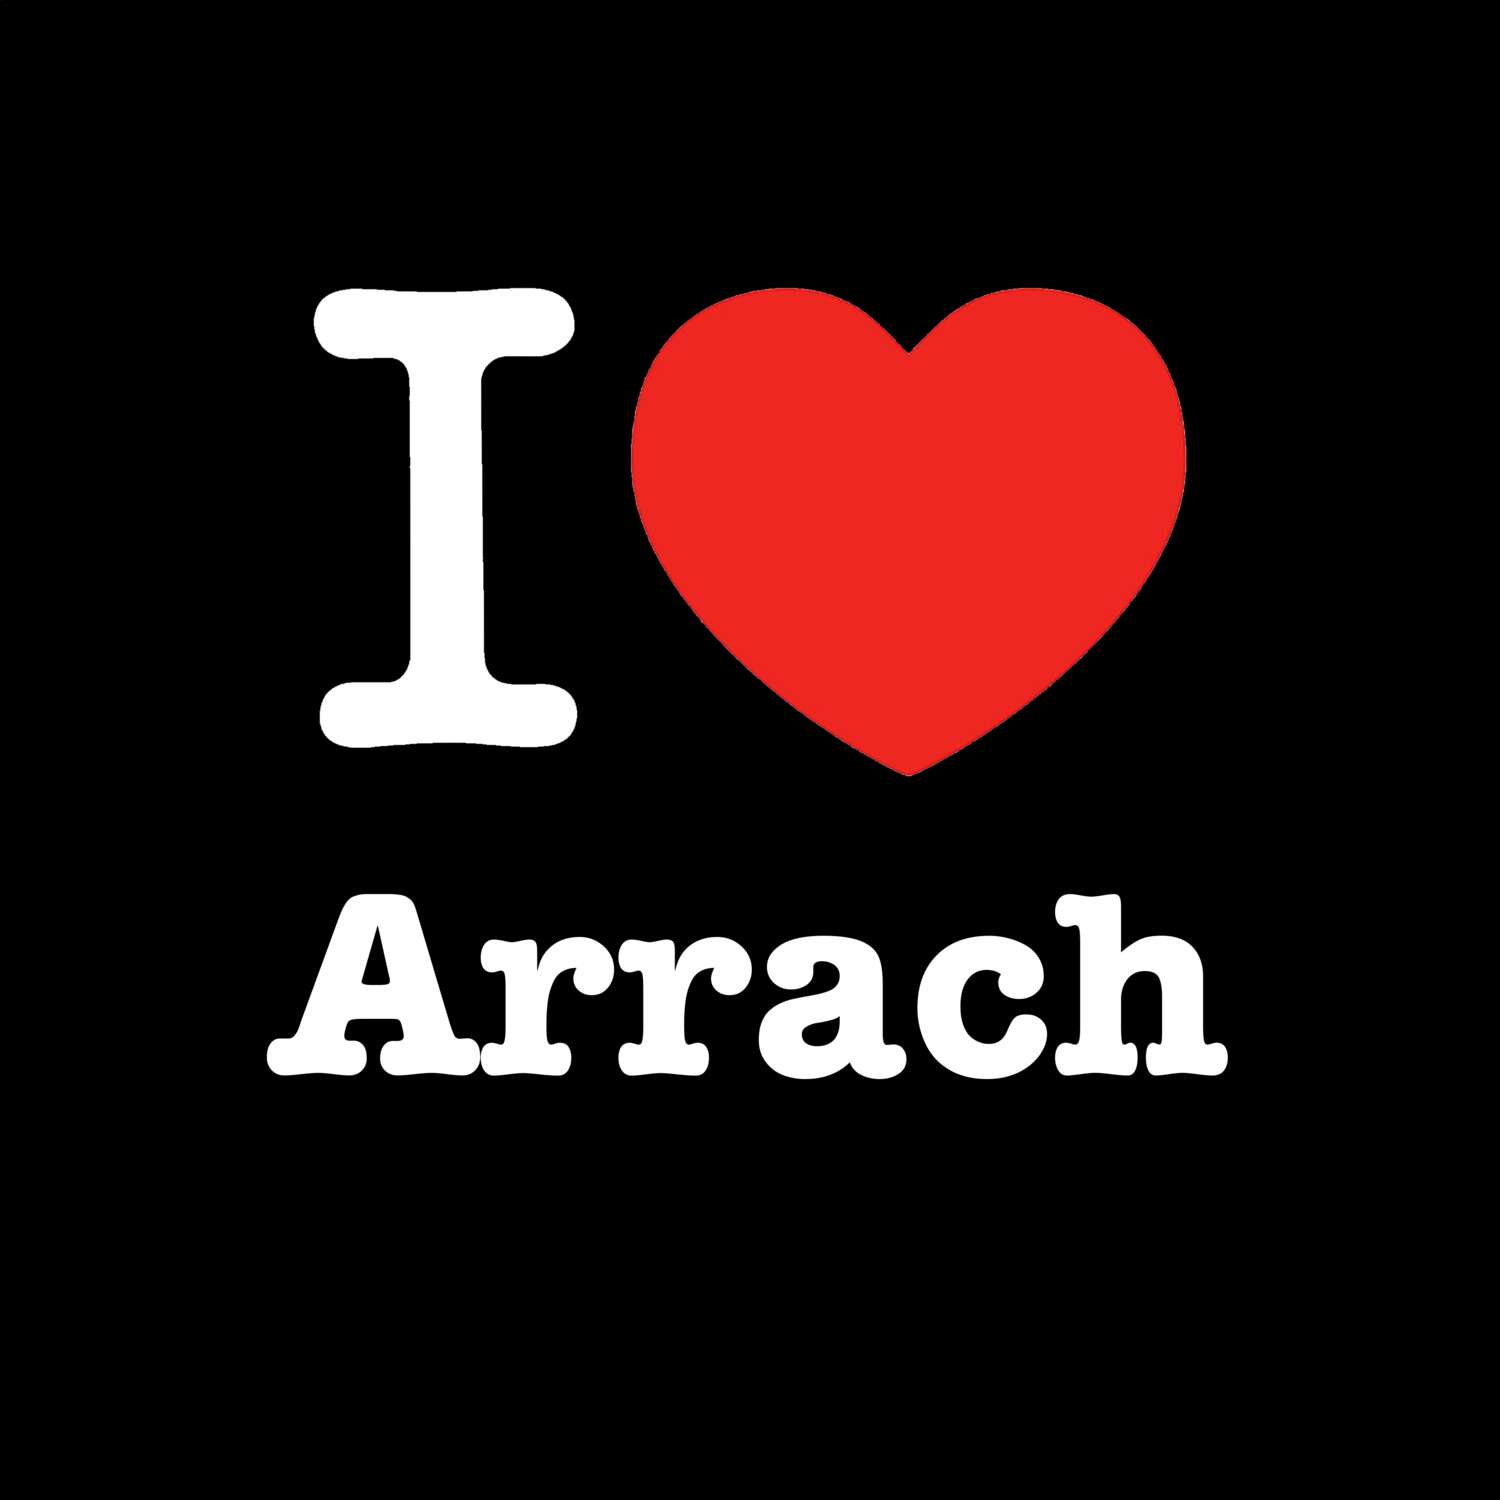 Arrach T-Shirt »I love«